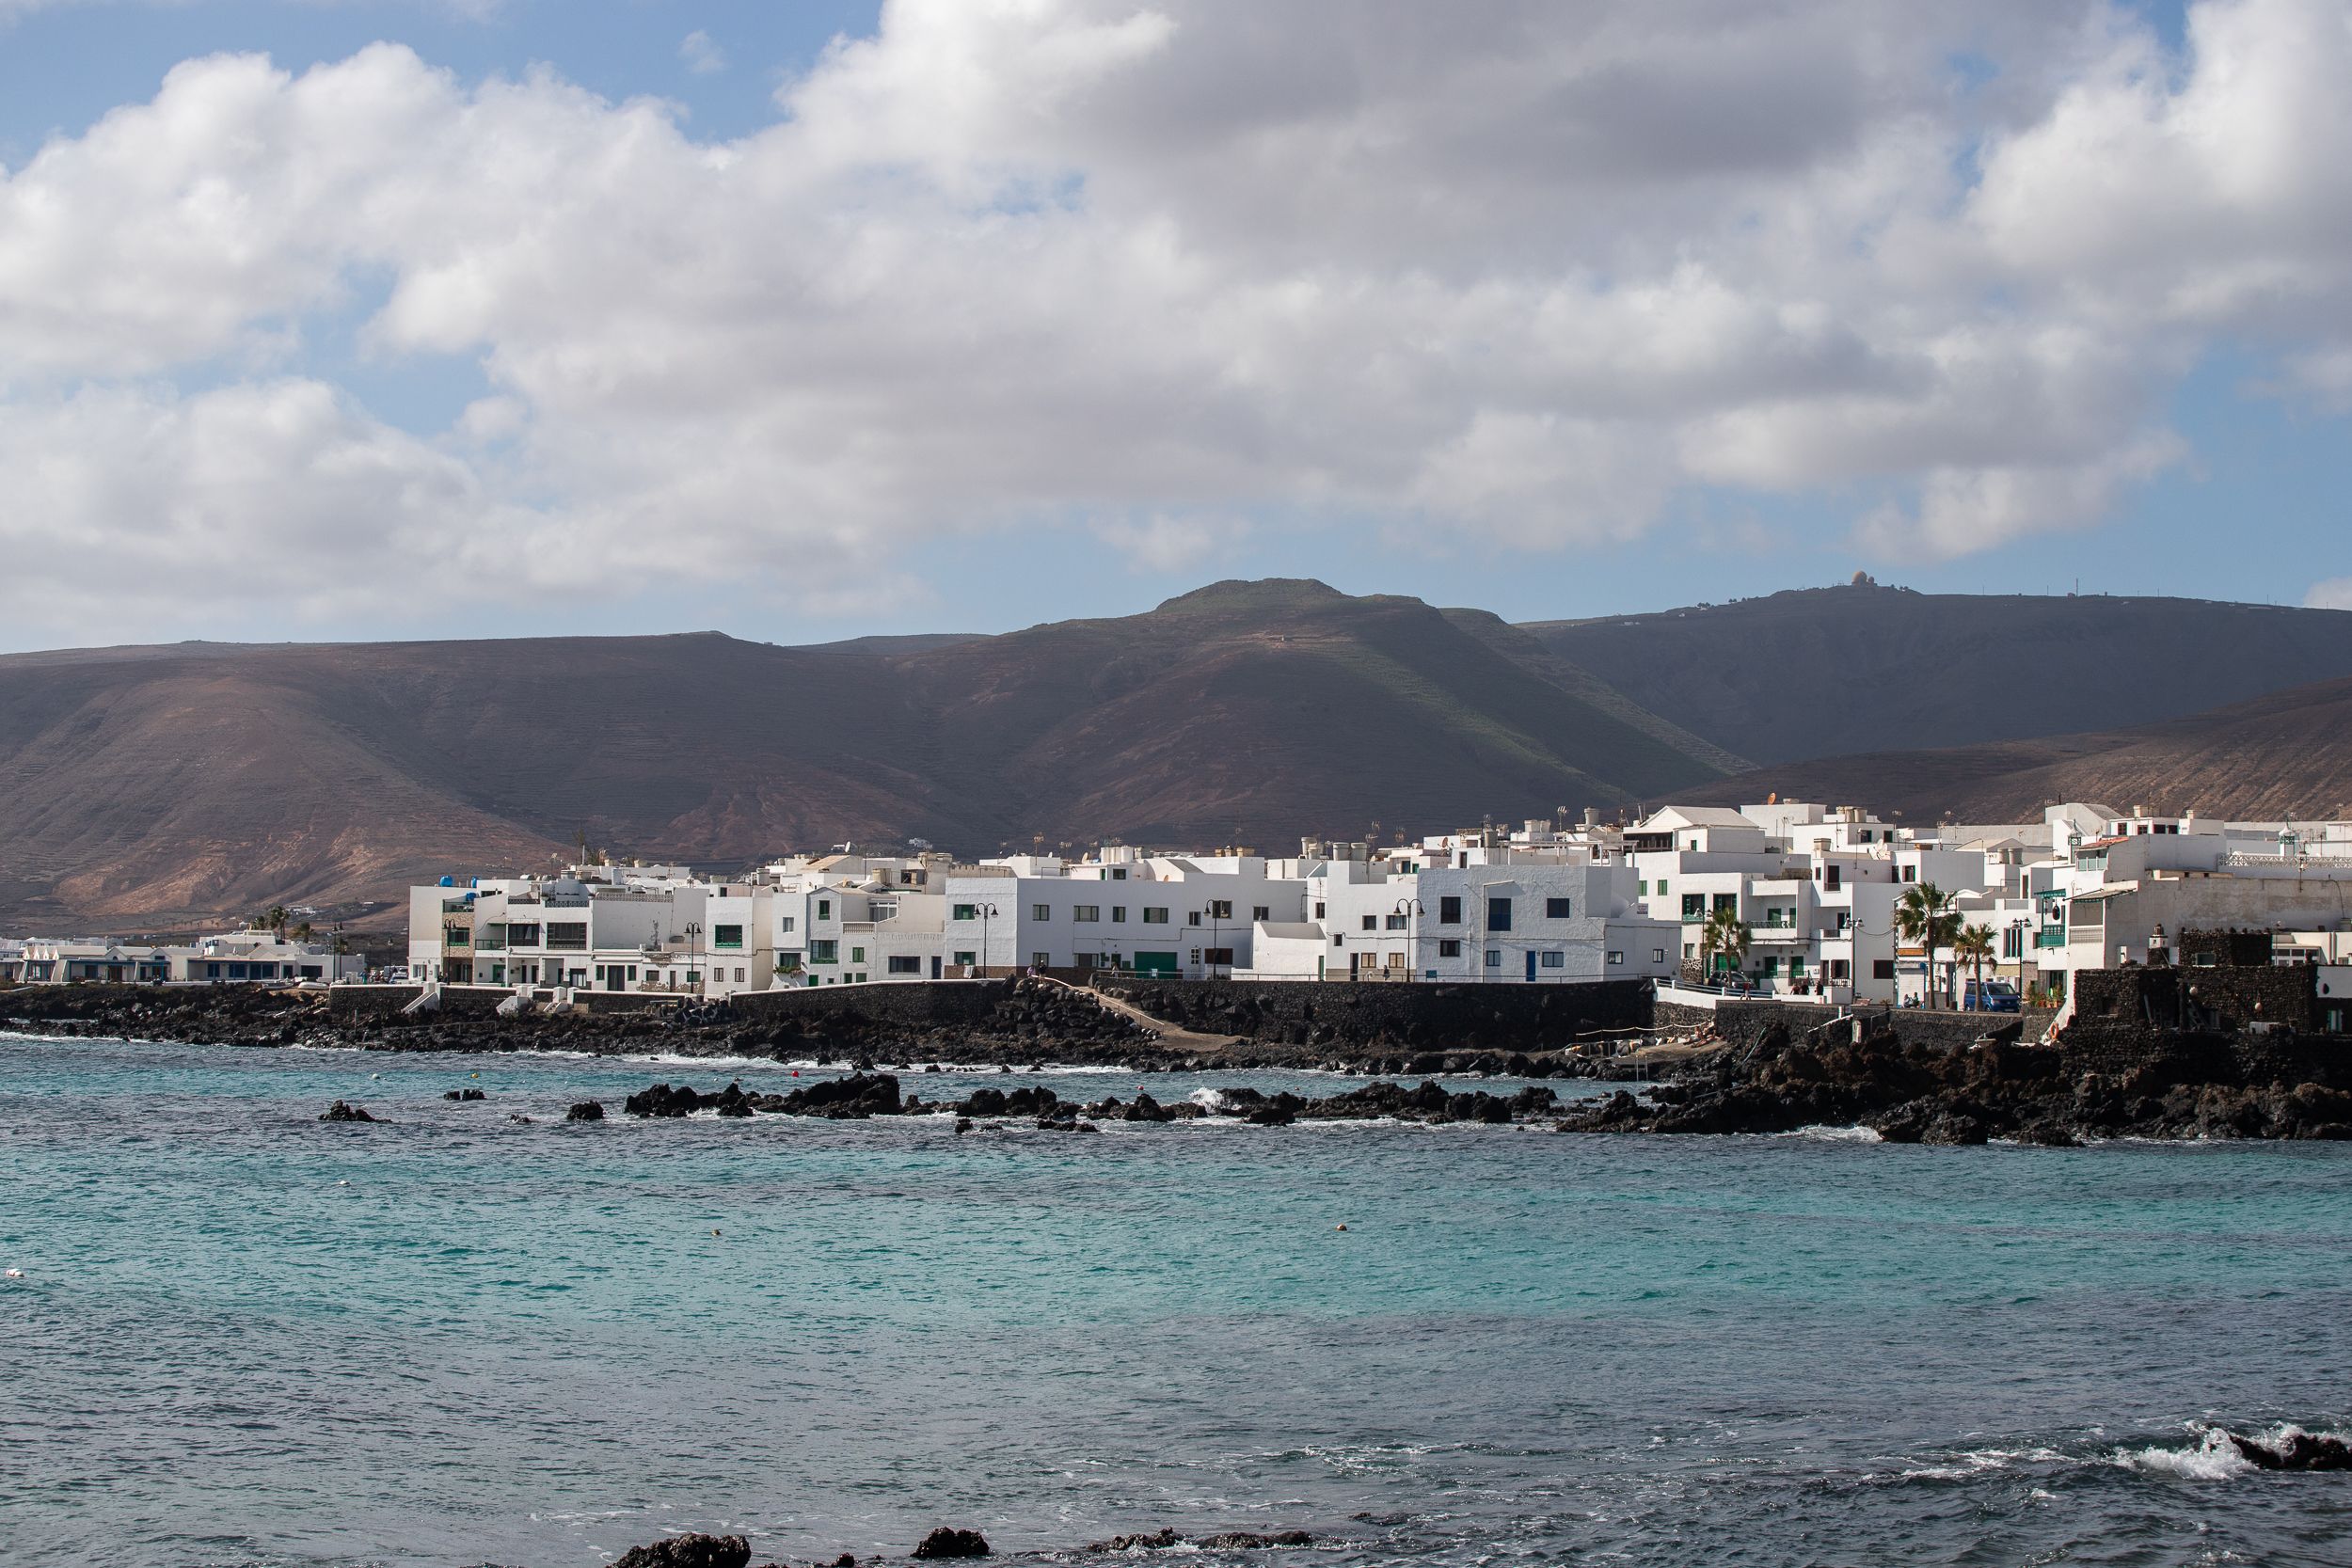 Viviendas junto al mar en el litoral de Punta Mujeres, en Lanzarote. Foto: Andrea Domínguez.